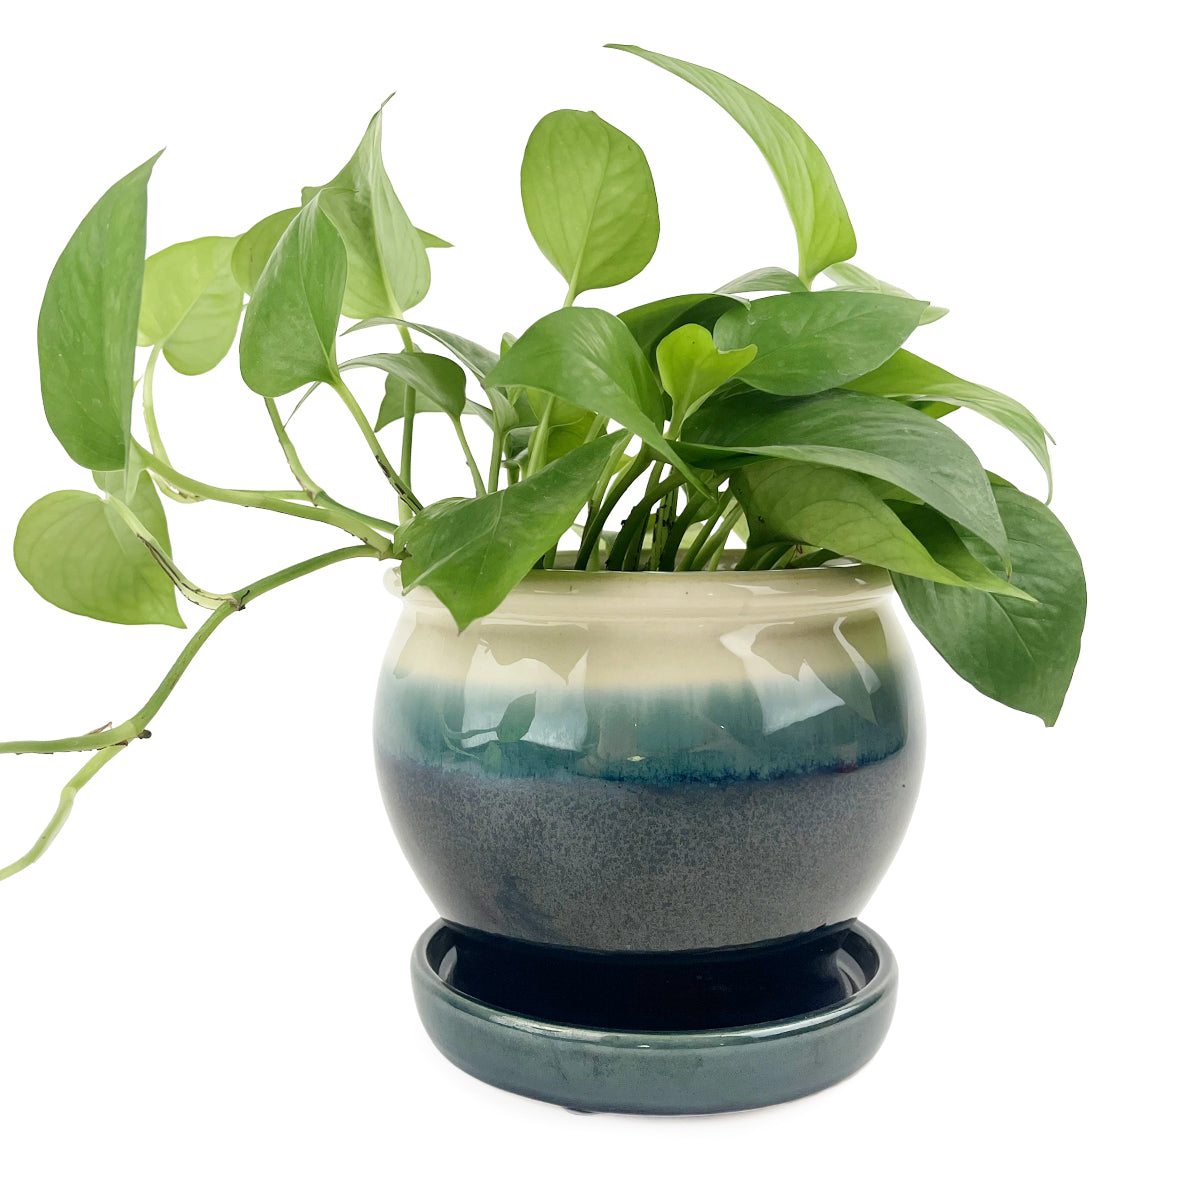 Blue ceramic pot 6 inch size for sale, Decorative succulent pot ideas, Buy 6 inch Ceramic Planter & Attached Saucer online